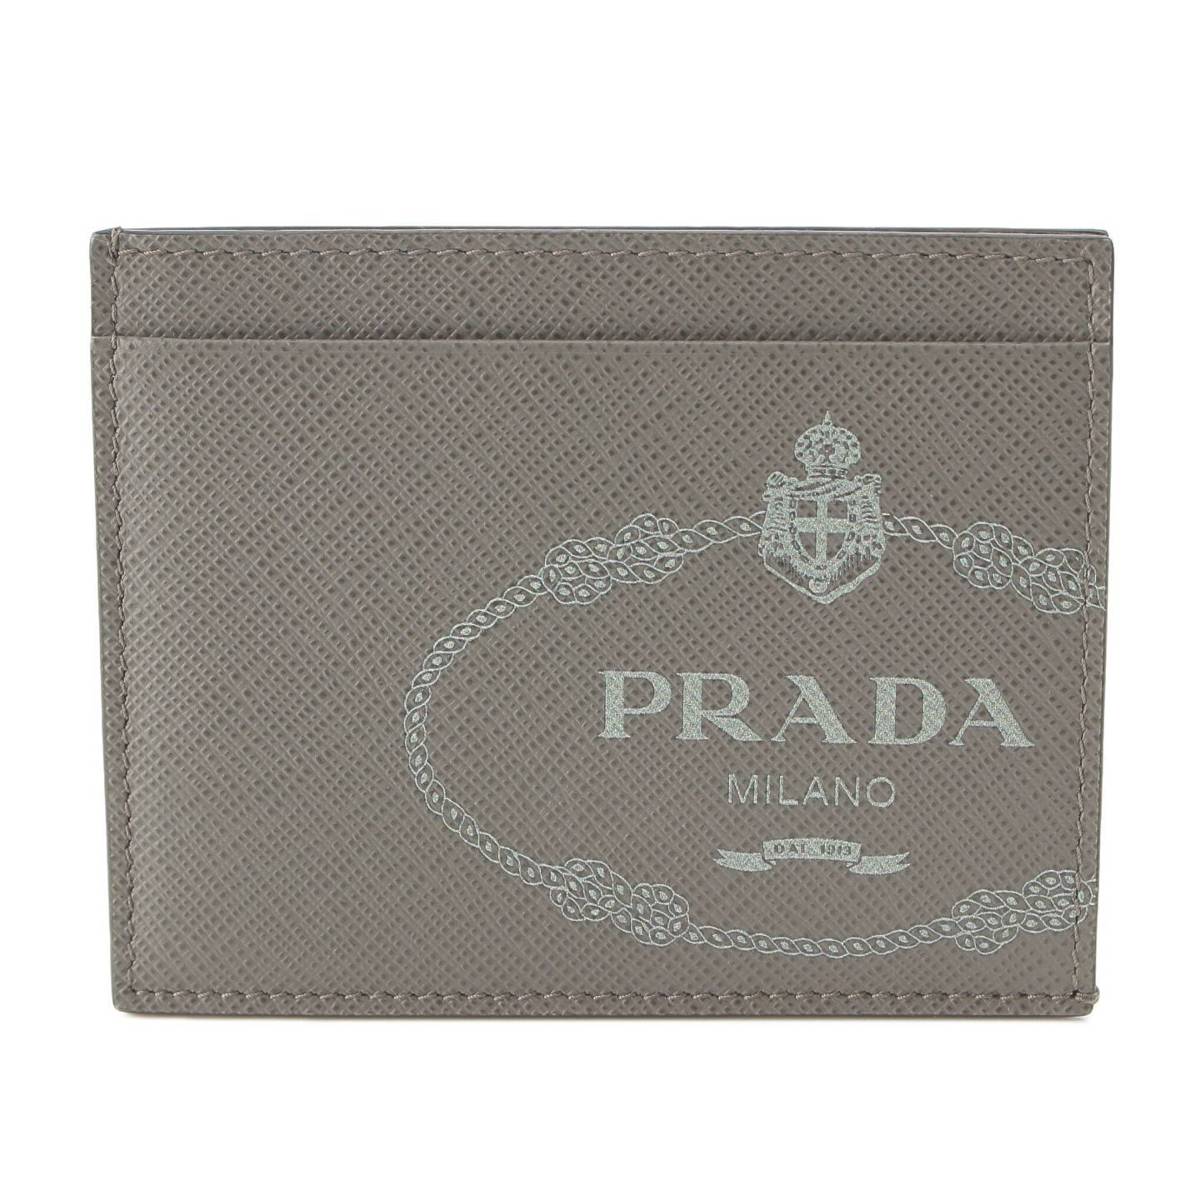 プラダ Prada サフィアーノ レザー ロゴ カードケース パスケース 名刺入れ 2MC223 グレー 中古 通販 retro レトロ